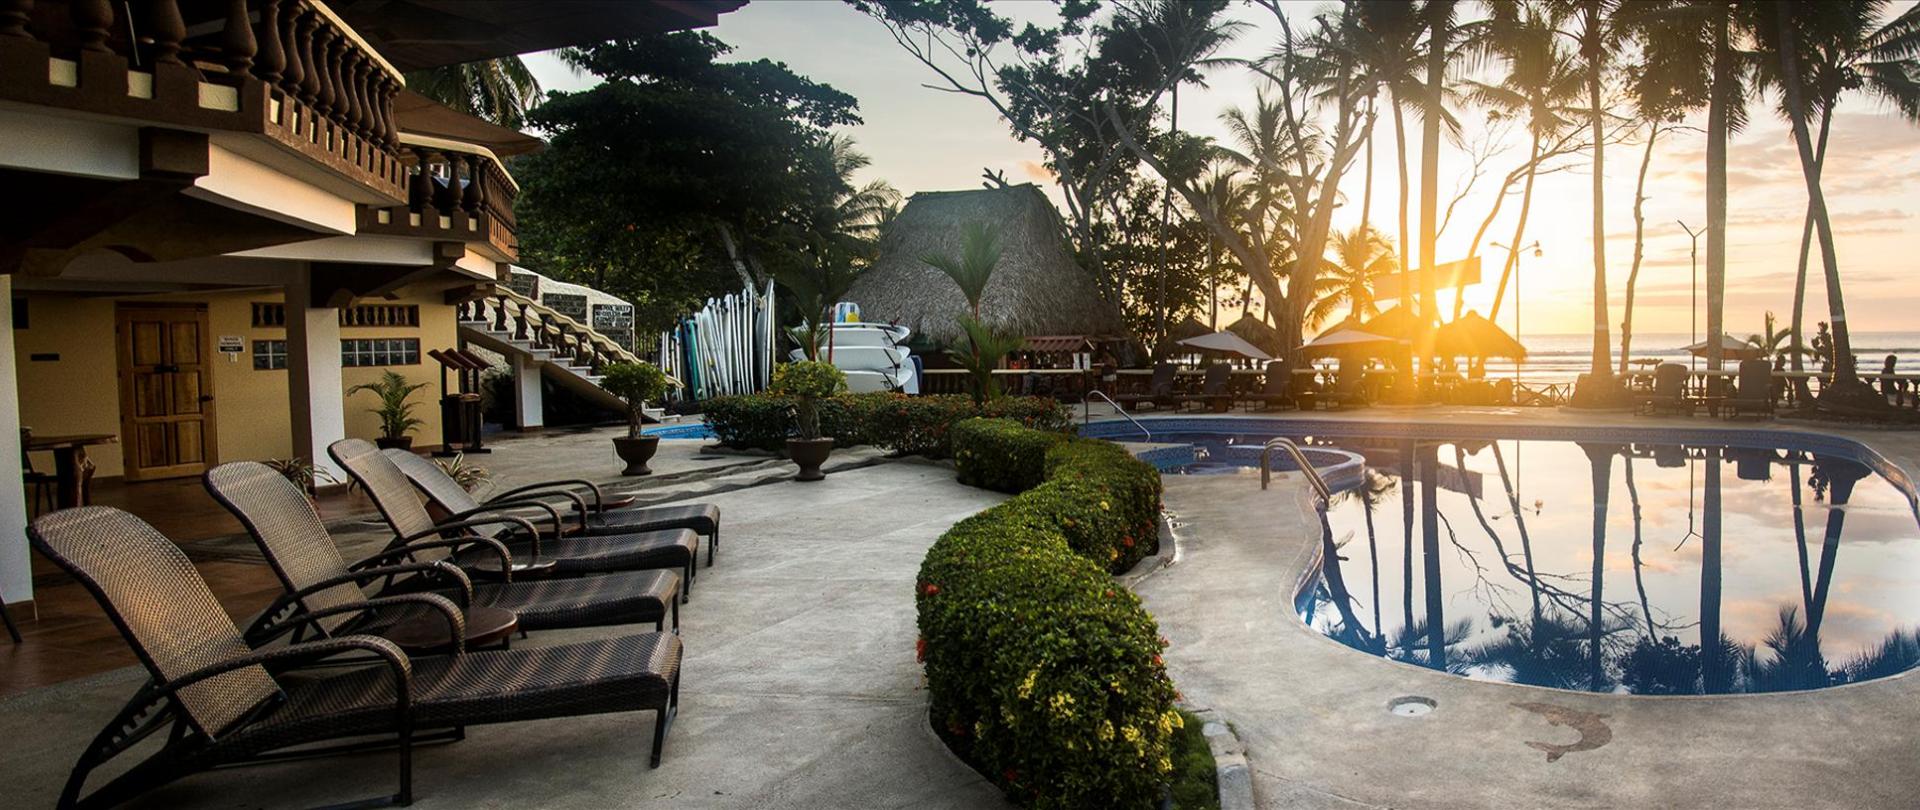 Costa Rica Beach Resorts | Costa Rica Beach Hotels | Jaco Laguna